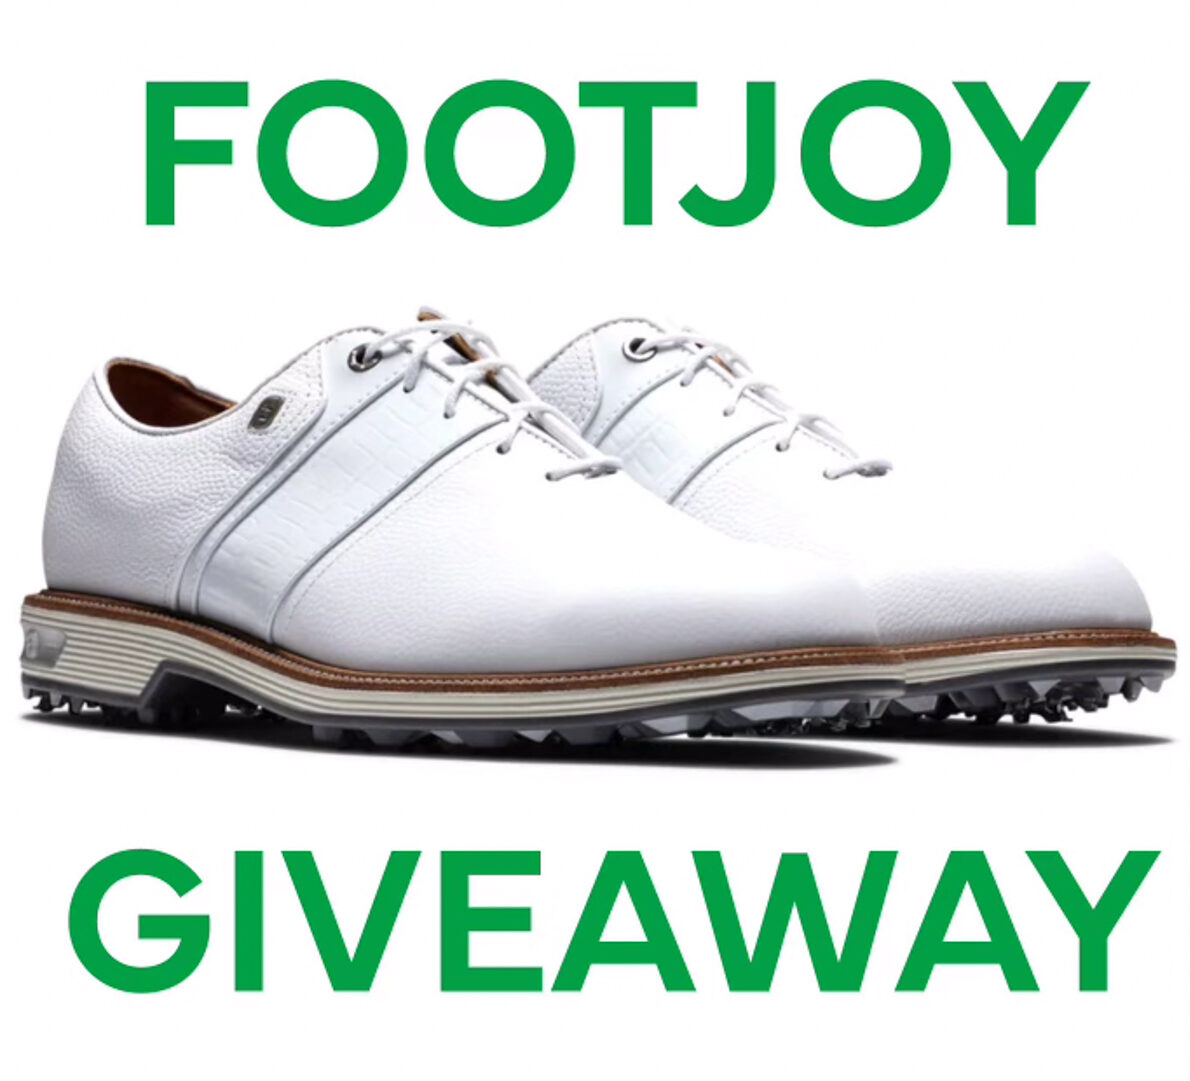 Footjoy Premier Packard Golf Shoe Giveaway